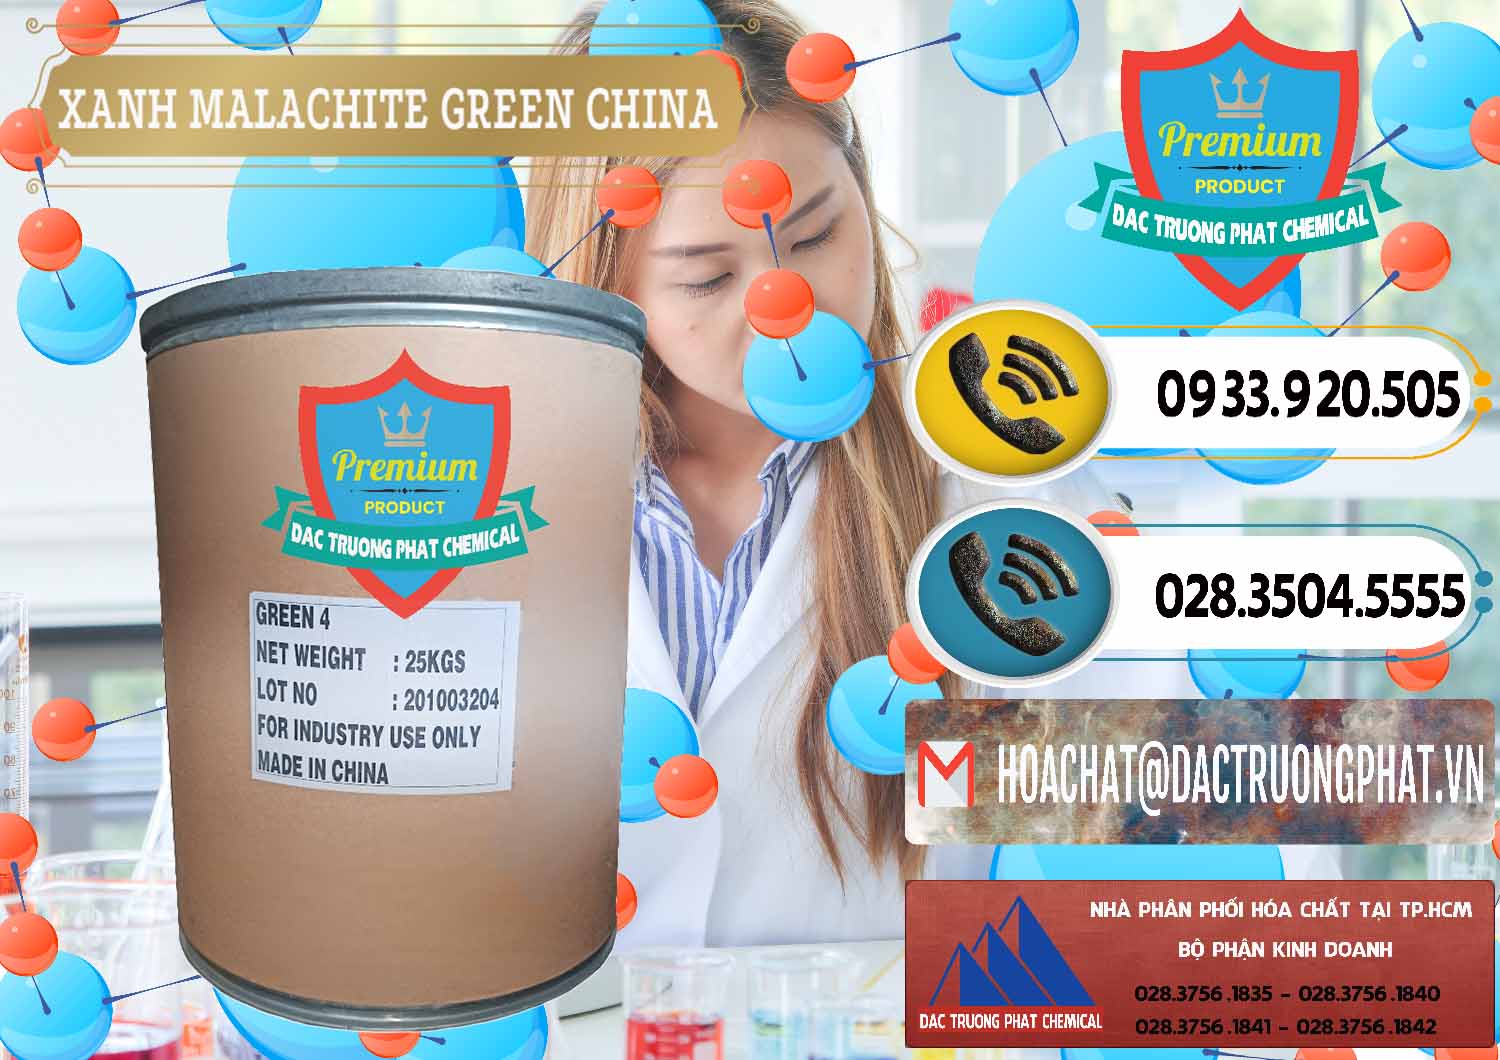 Nơi chuyên bán - cung cấp Xanh Malachite Green Trung Quốc China - 0325 - Đơn vị chuyên cung cấp _ bán hóa chất tại TP.HCM - hoachatdetnhuom.vn